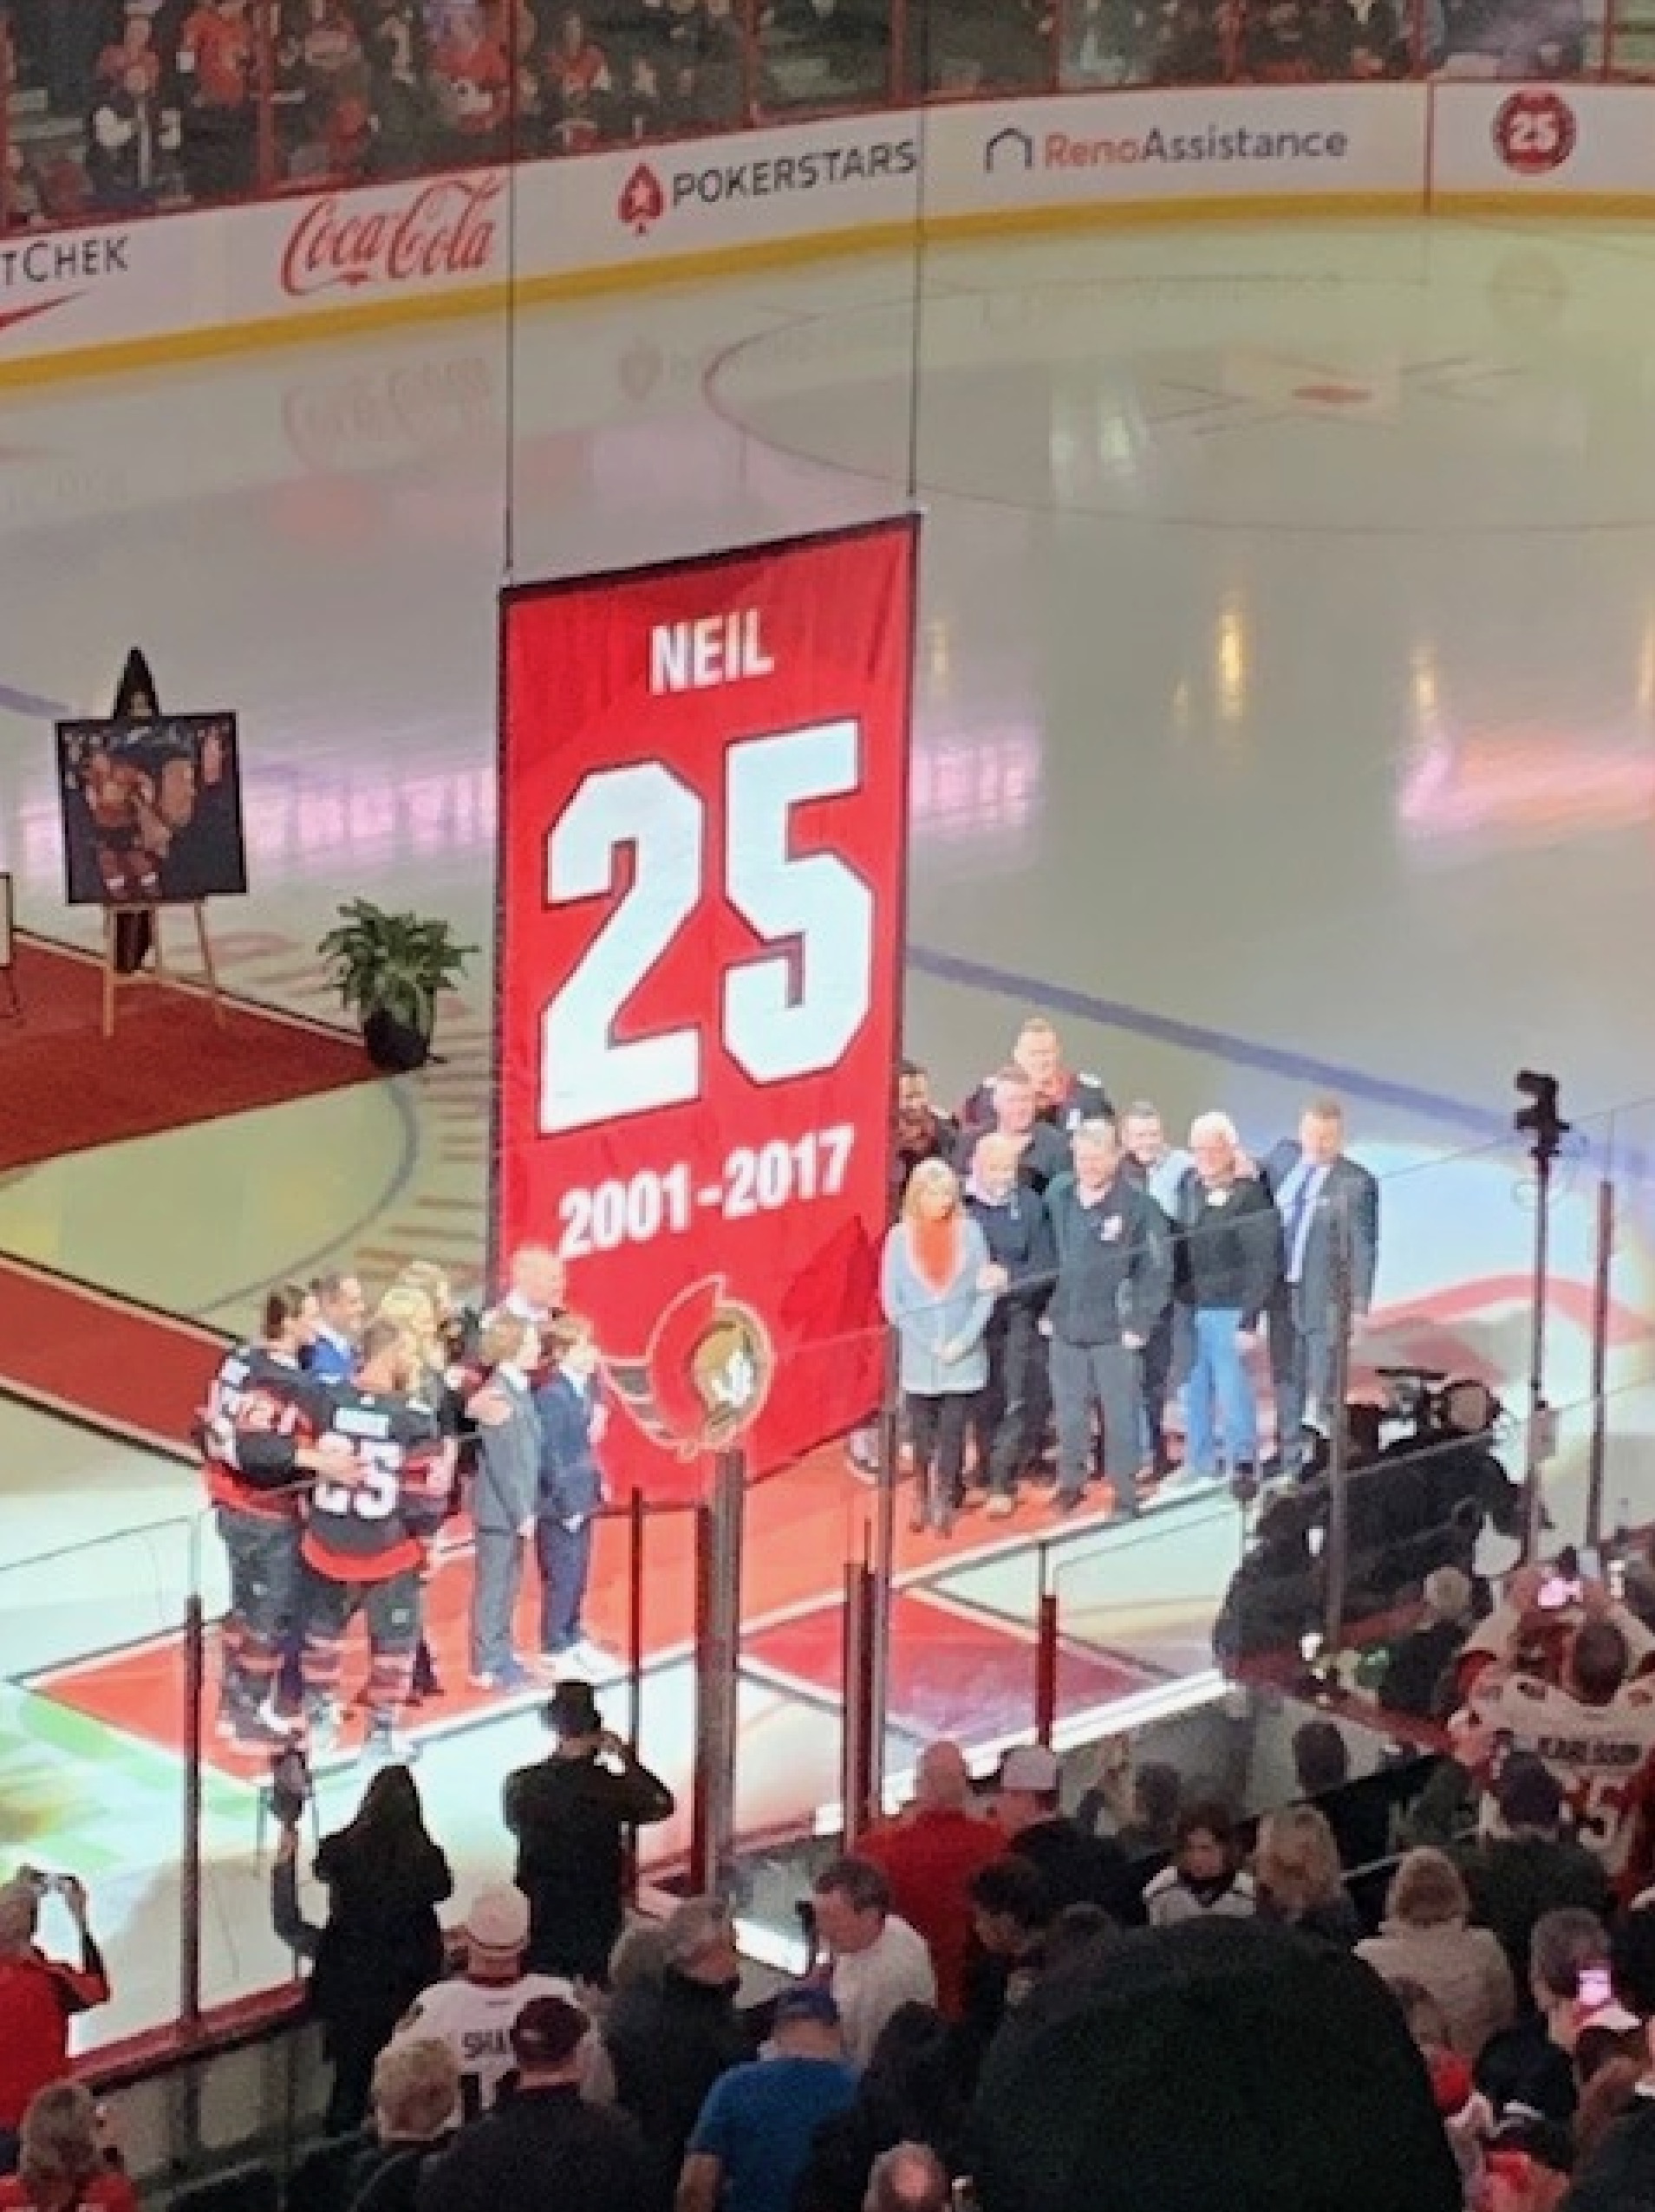 Ottawa Senators retire Chris Neil's #25